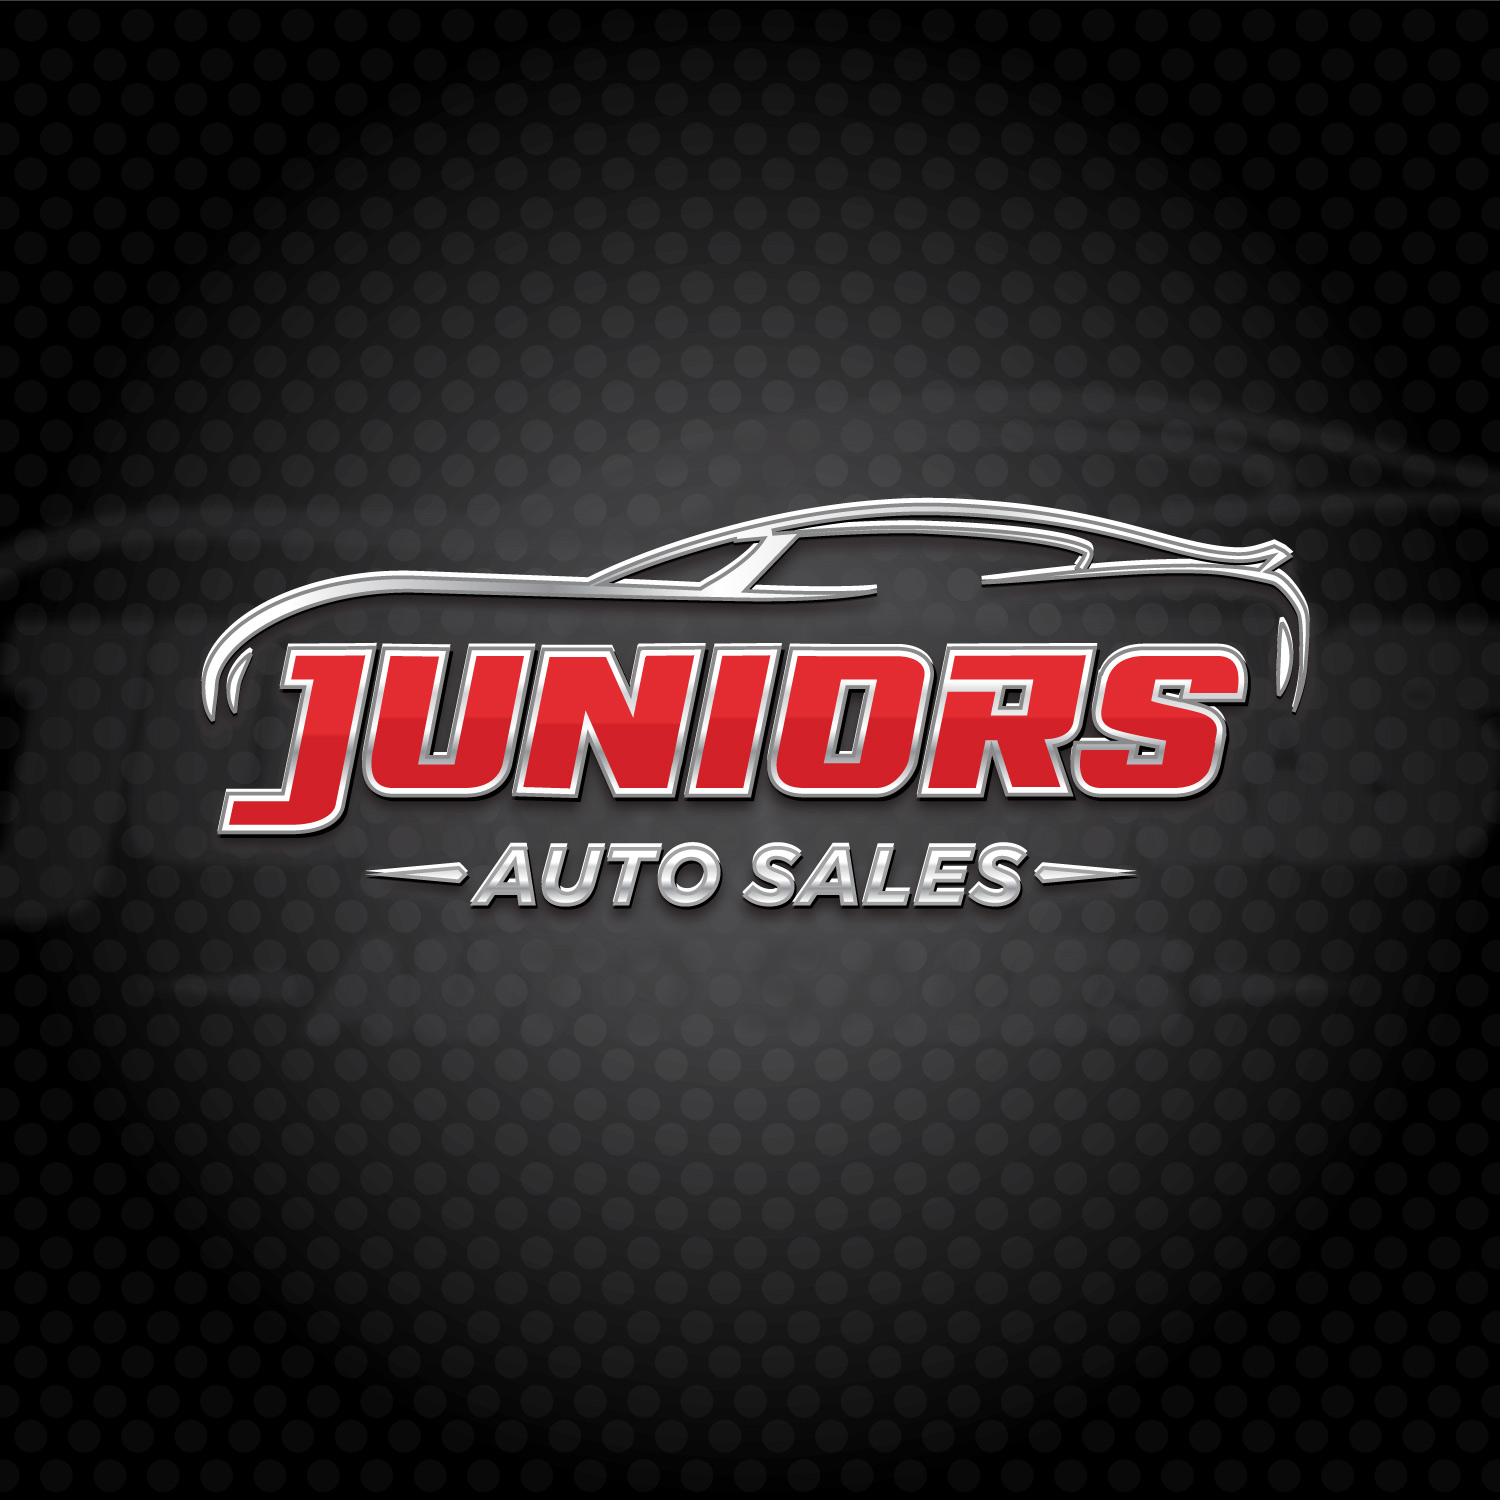 juniors-auto-sales-in-eureka-ca-logo-design-portfolio-example-for-american-logo-designer-in-eureka-california